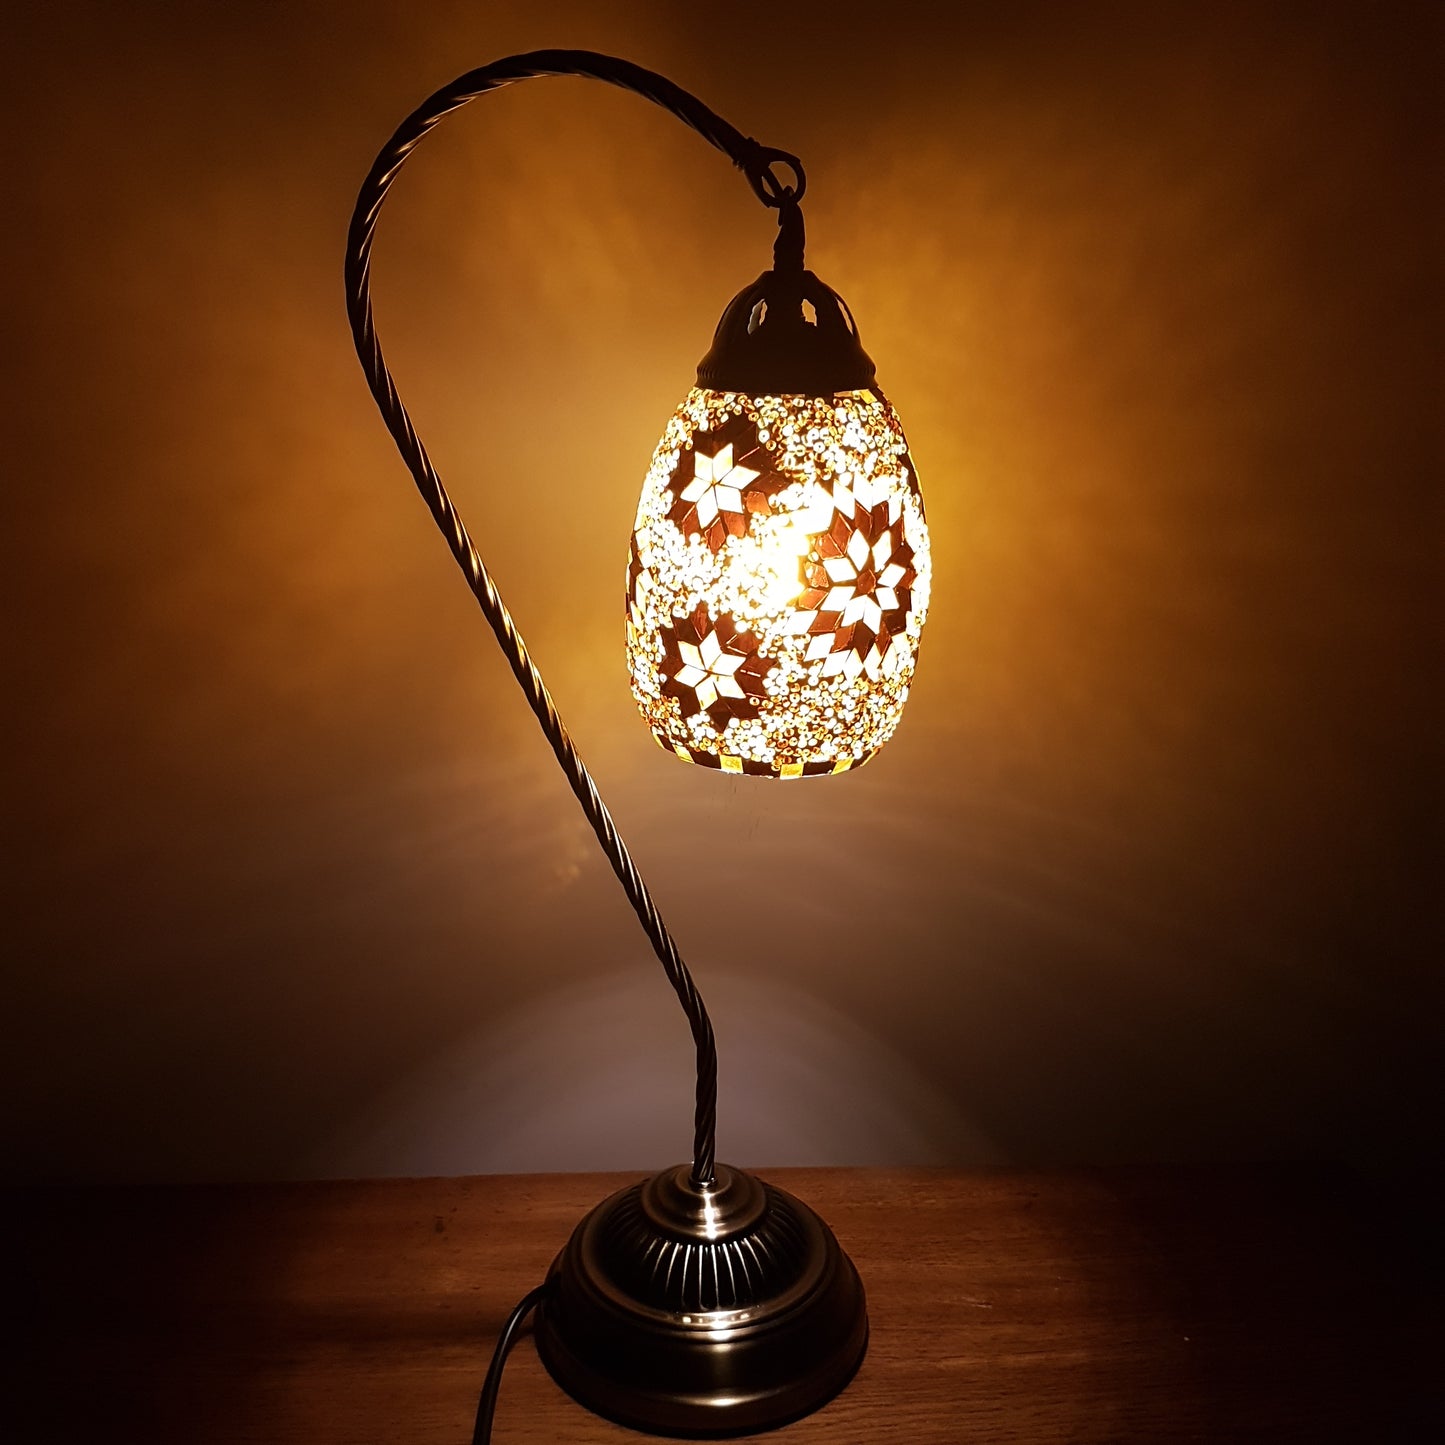 Turkish Mosaic Swan Lamp